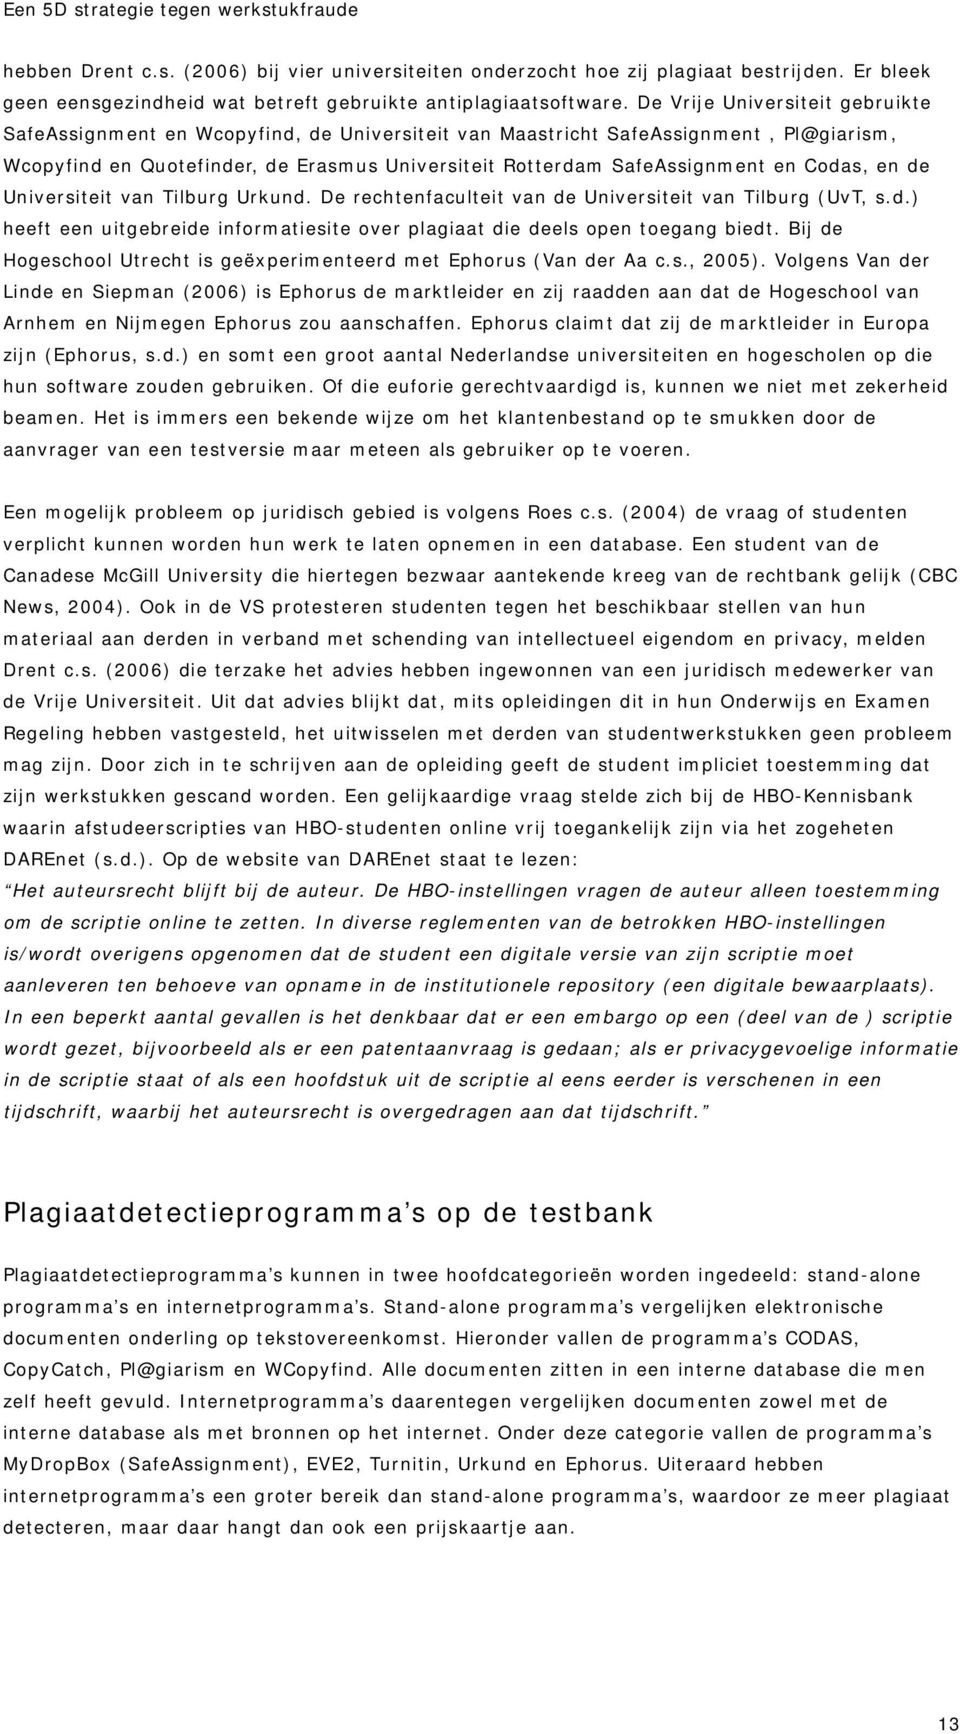 Codas, en de Universiteit van Tilburg Urkund. De rechtenfaculteit van de Universiteit van Tilburg (UvT, s.d.) heeft een uitgebreide informatiesite over plagiaat die deels open toegang biedt.